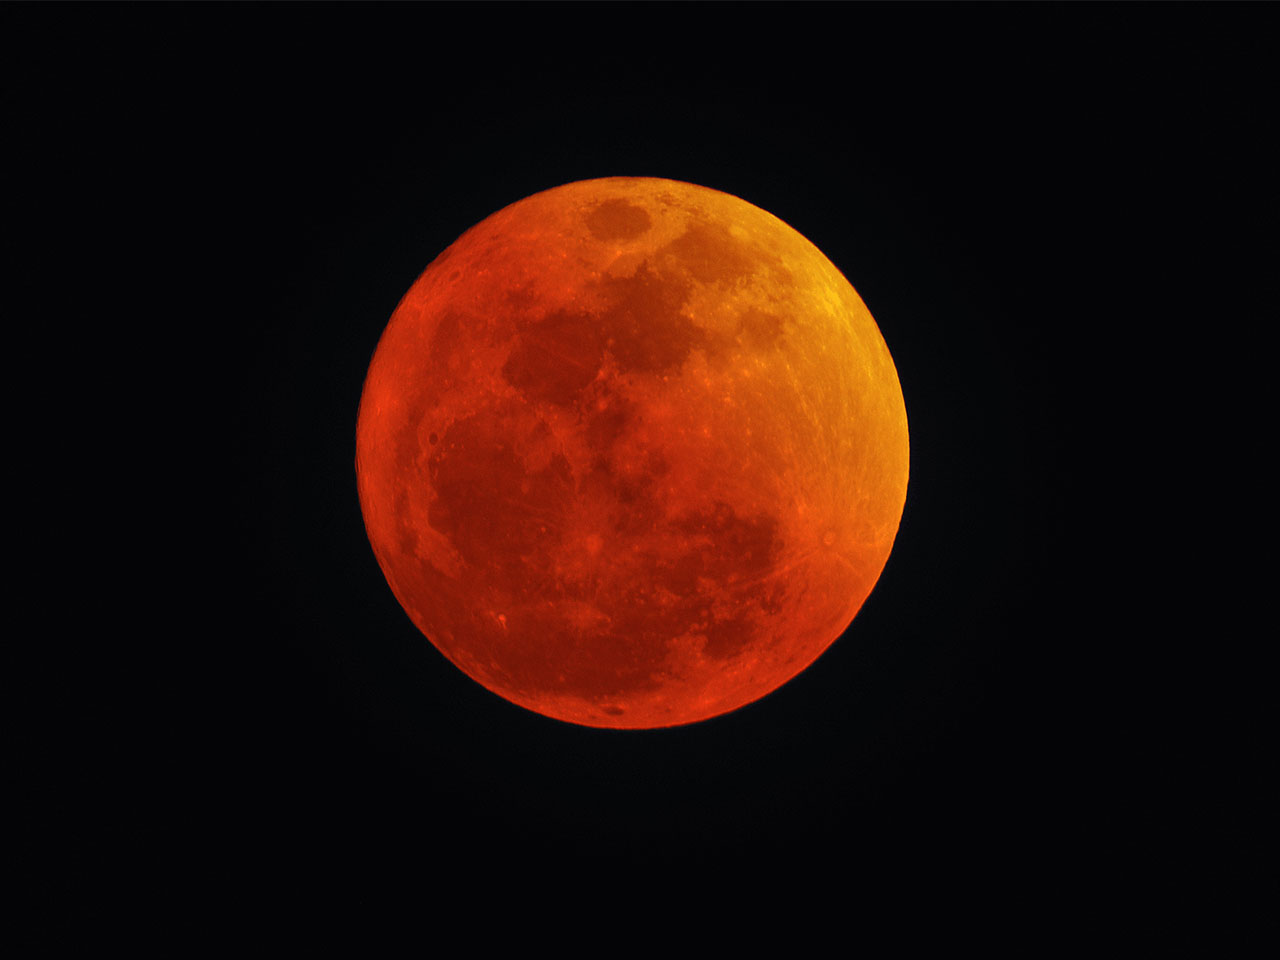 photographie d'une lune rousse